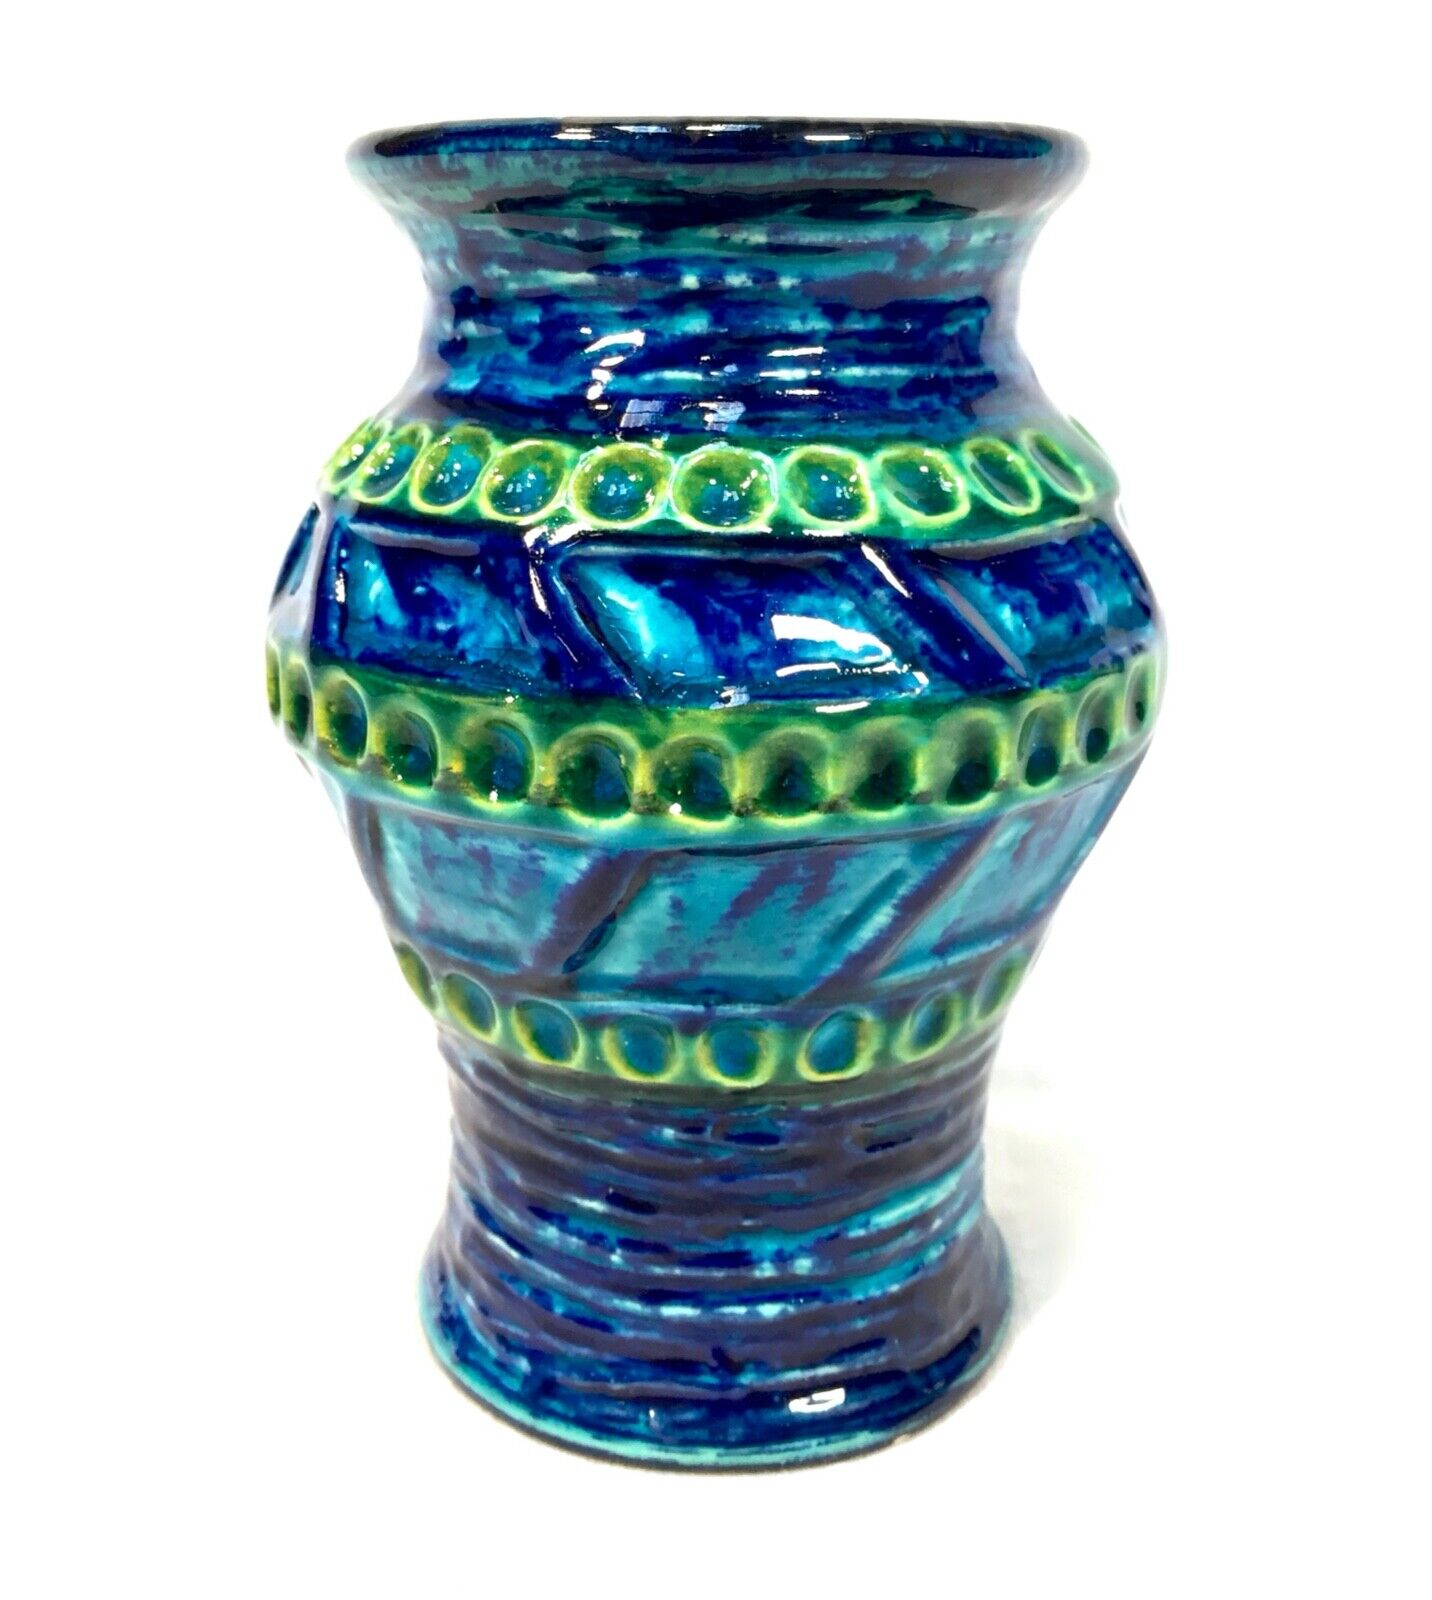 Vintage West German Pottery Fat Vase / Turquoise & Blue / Retro 1970s